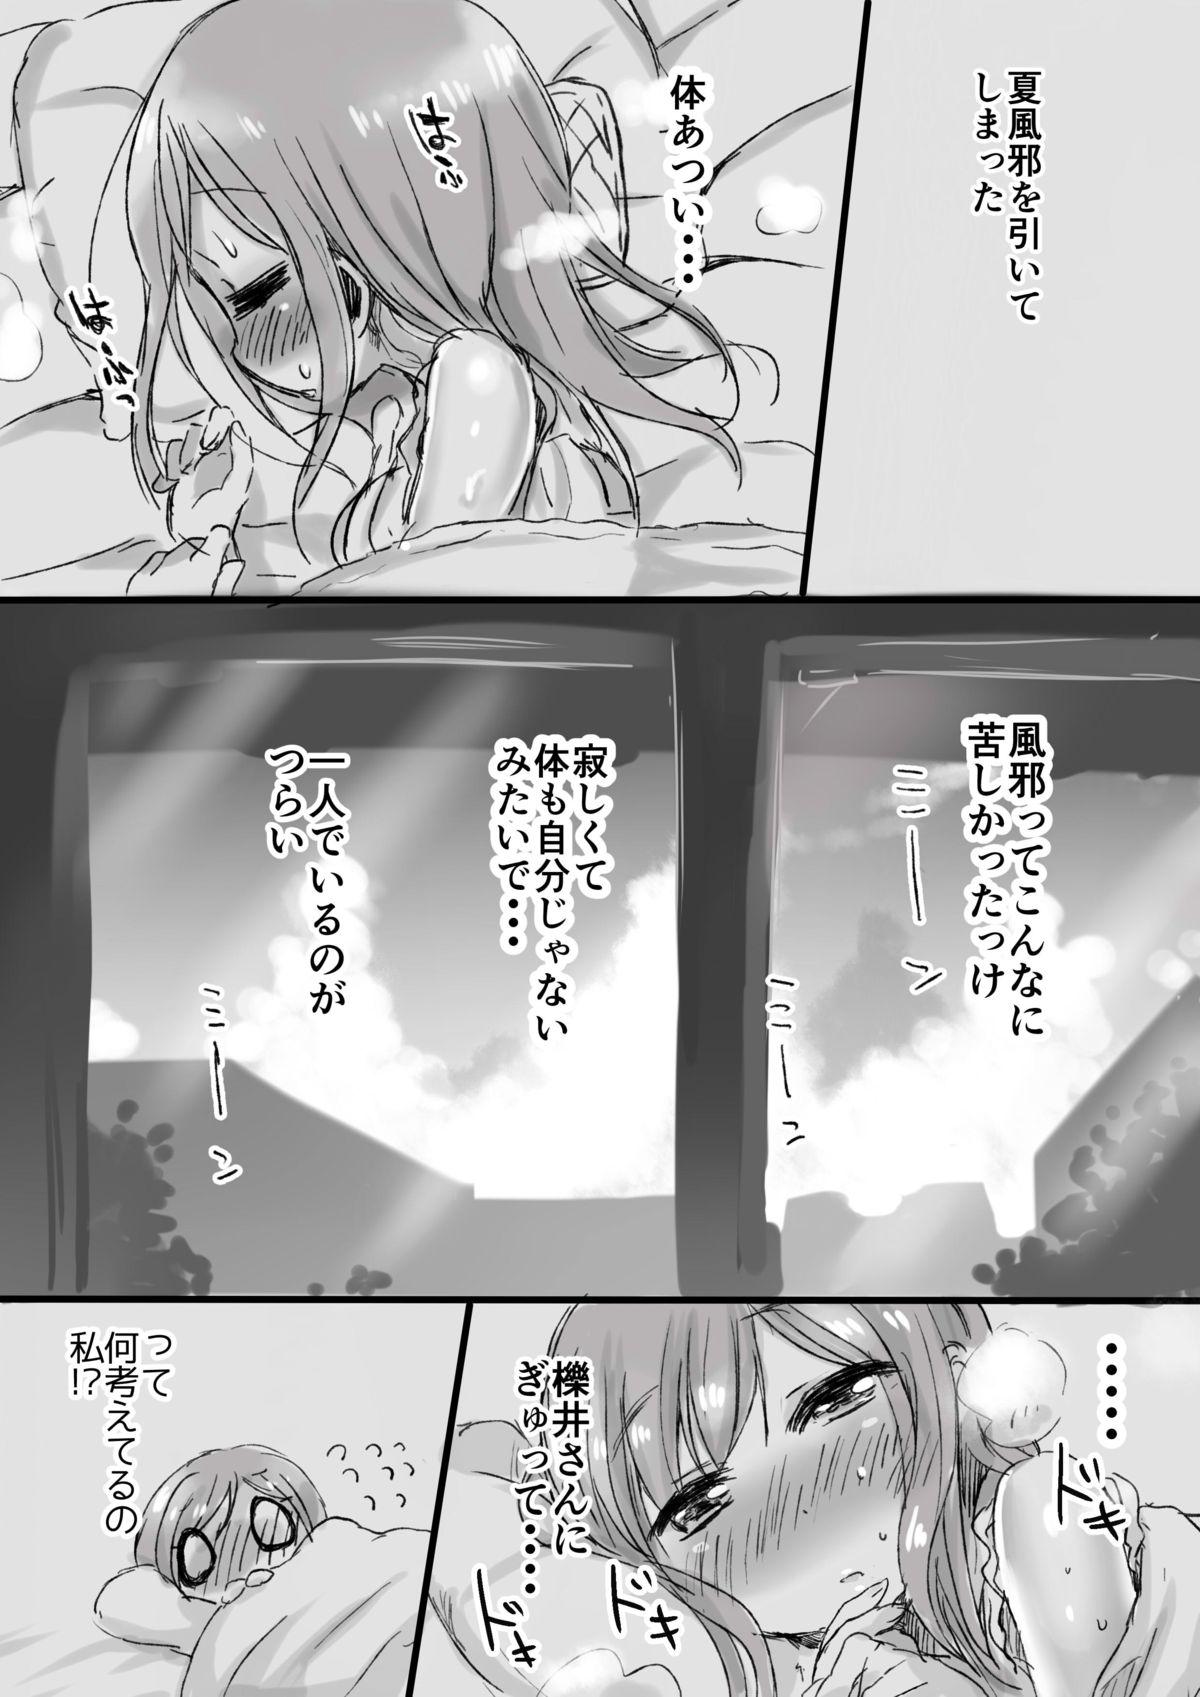 Blackmail Natsunetsu - Yuyushiki Time - Page 2